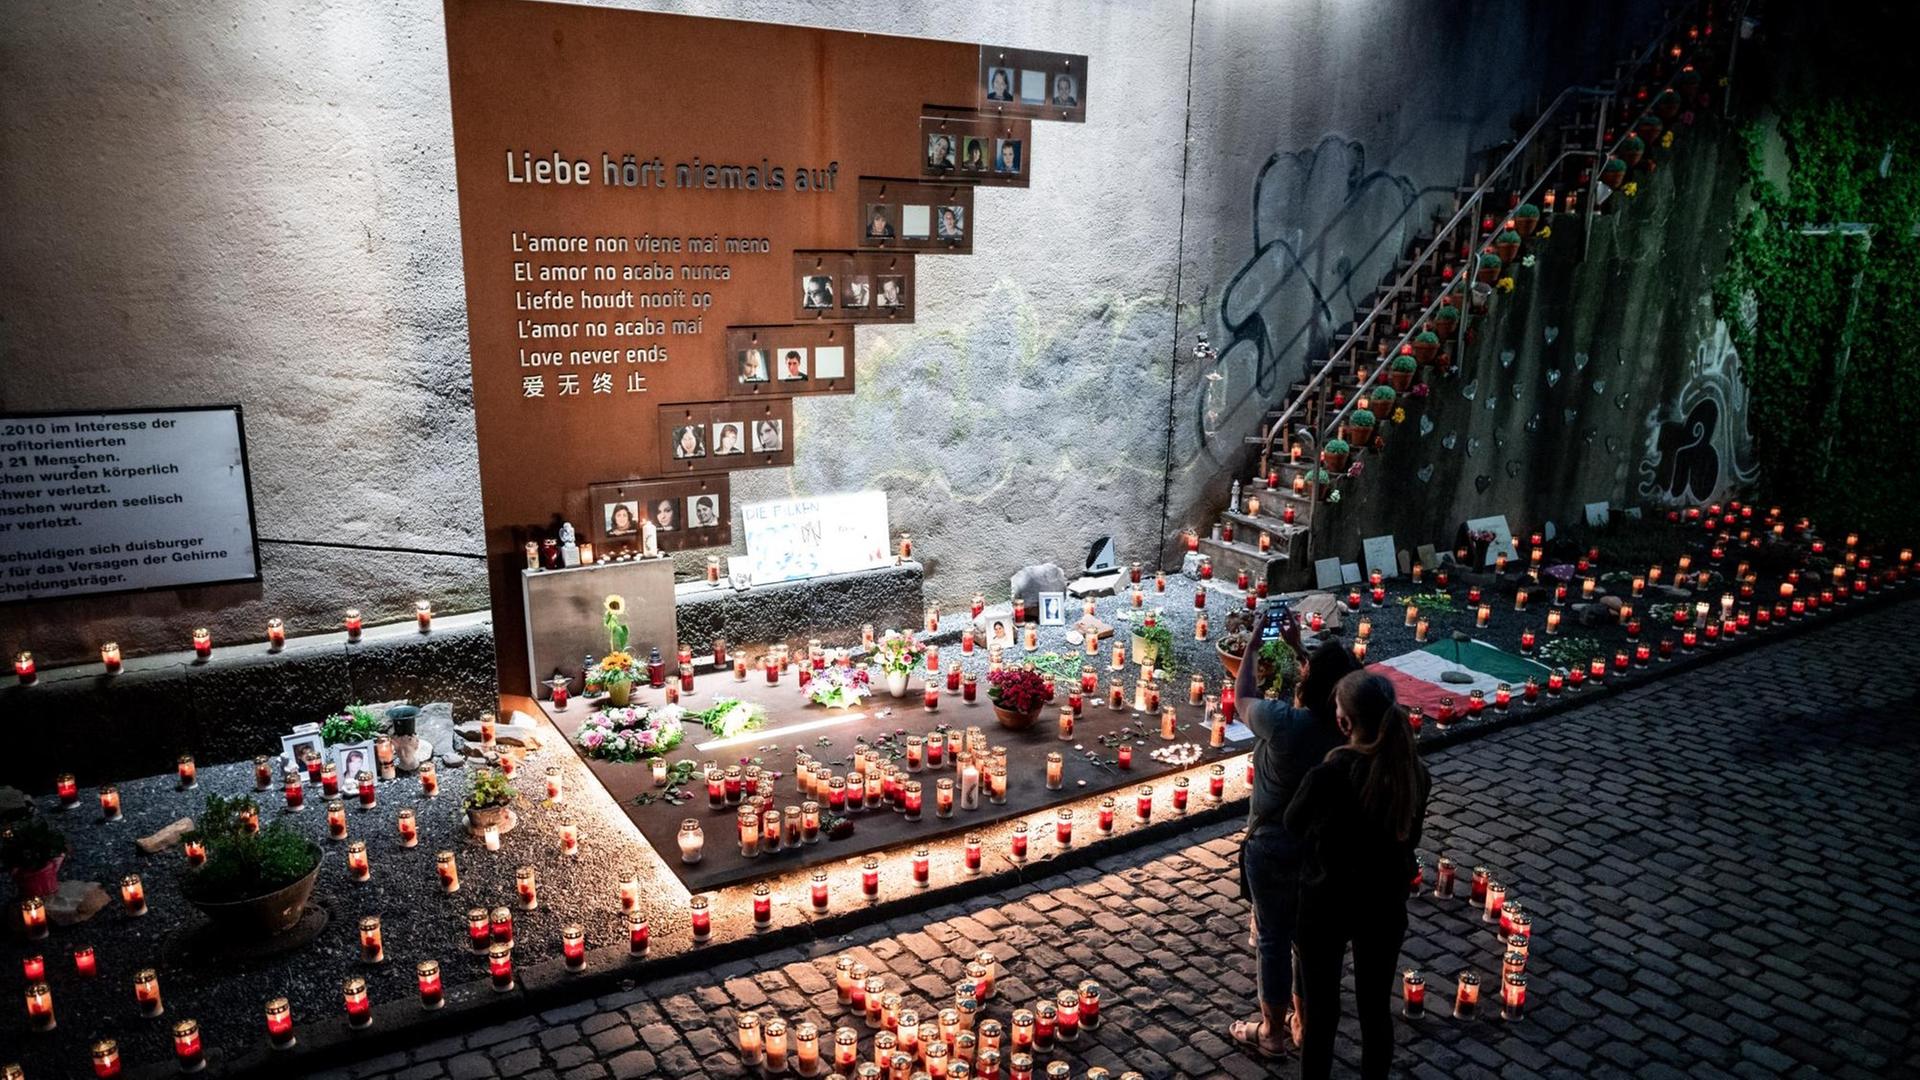 Menschen stehen vor Kerzen an der Gedenkstätte zur Massenpanik bei der Loveparade 2010, bei der 21 Menschen gestorben sind.